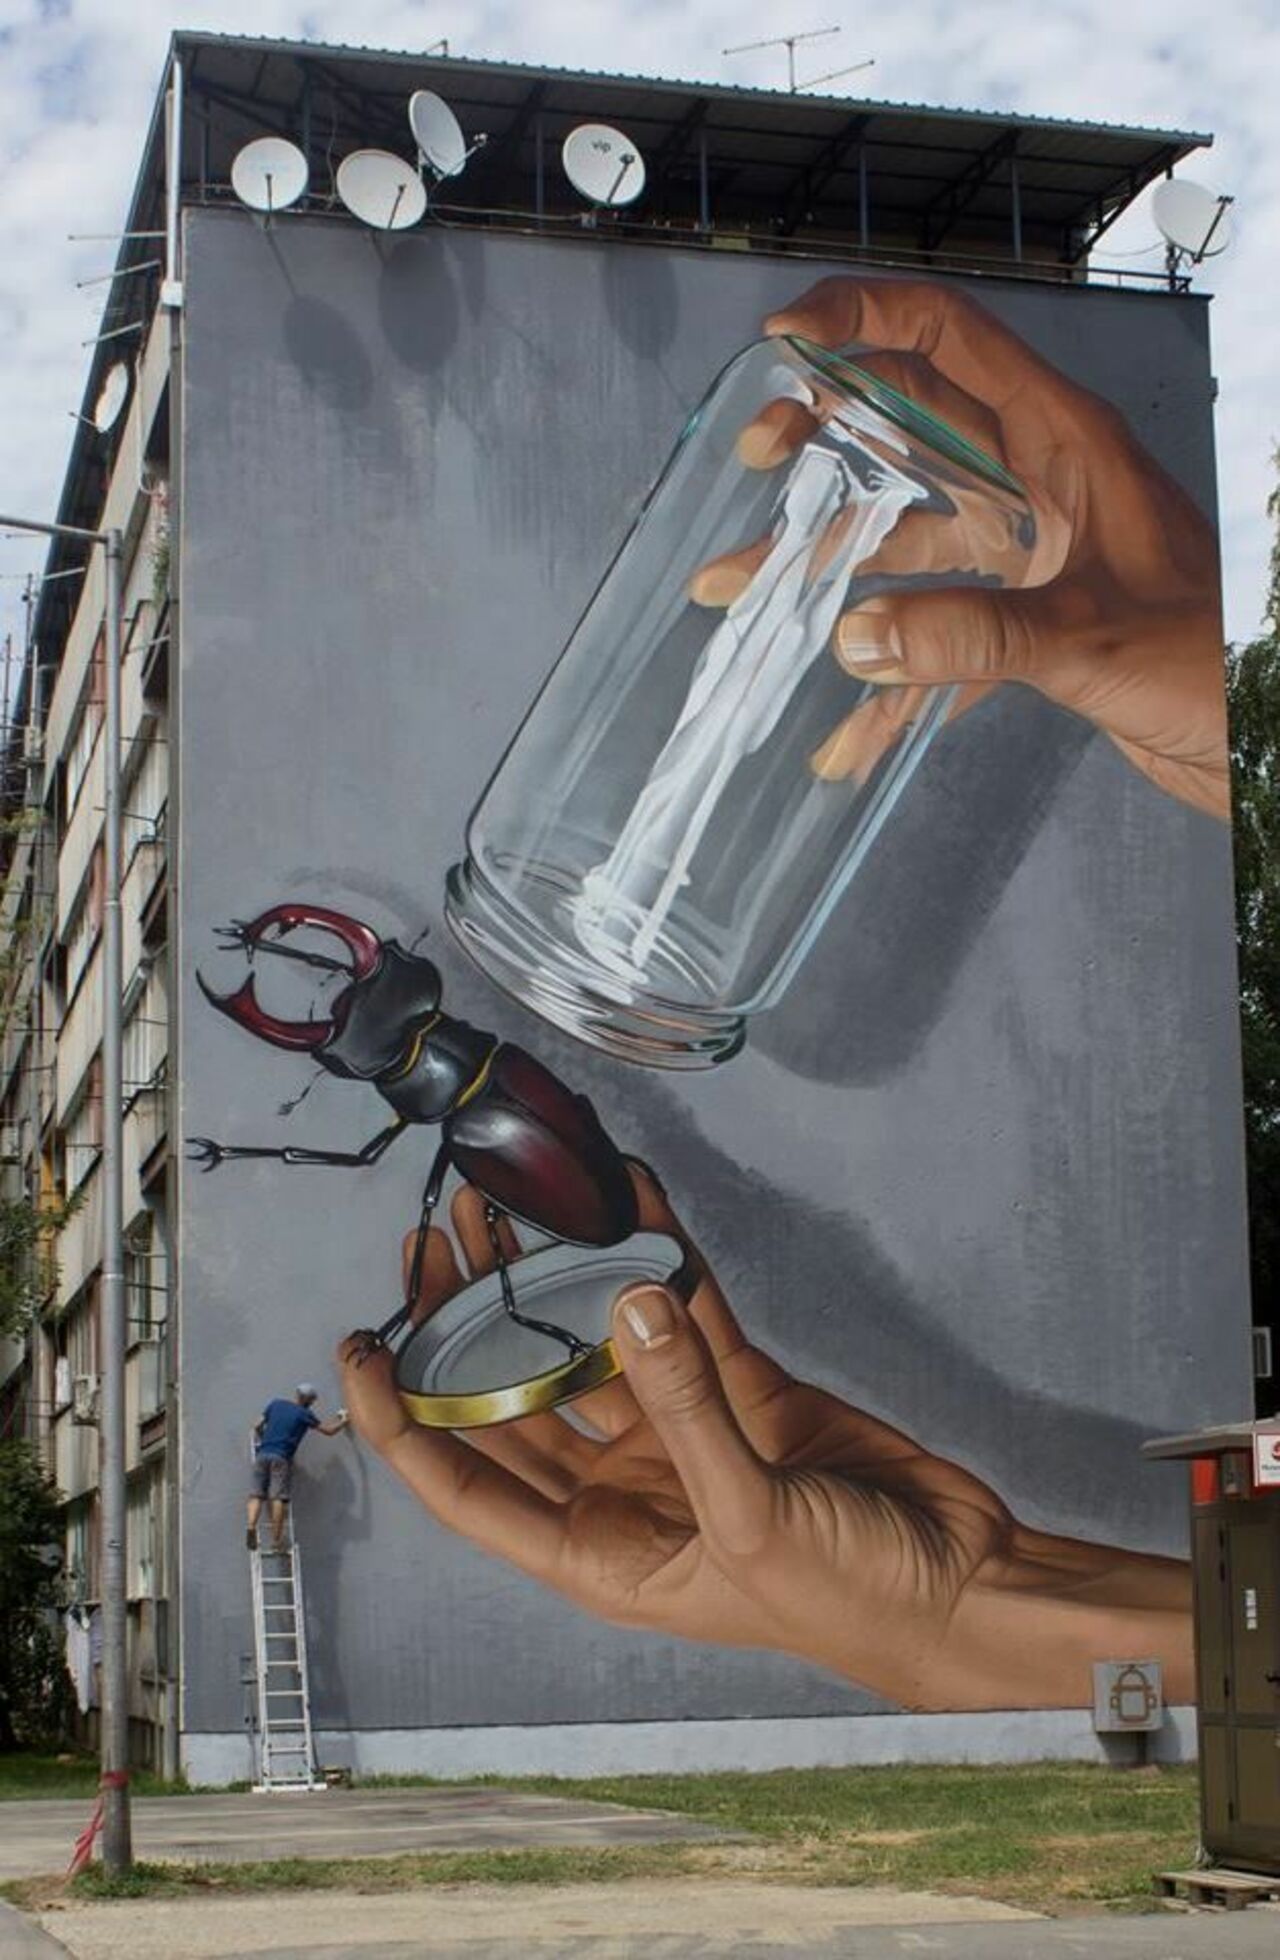 Artist: Lonac#streetart #mural #graffiti https://t.co/U8UI1MakmX